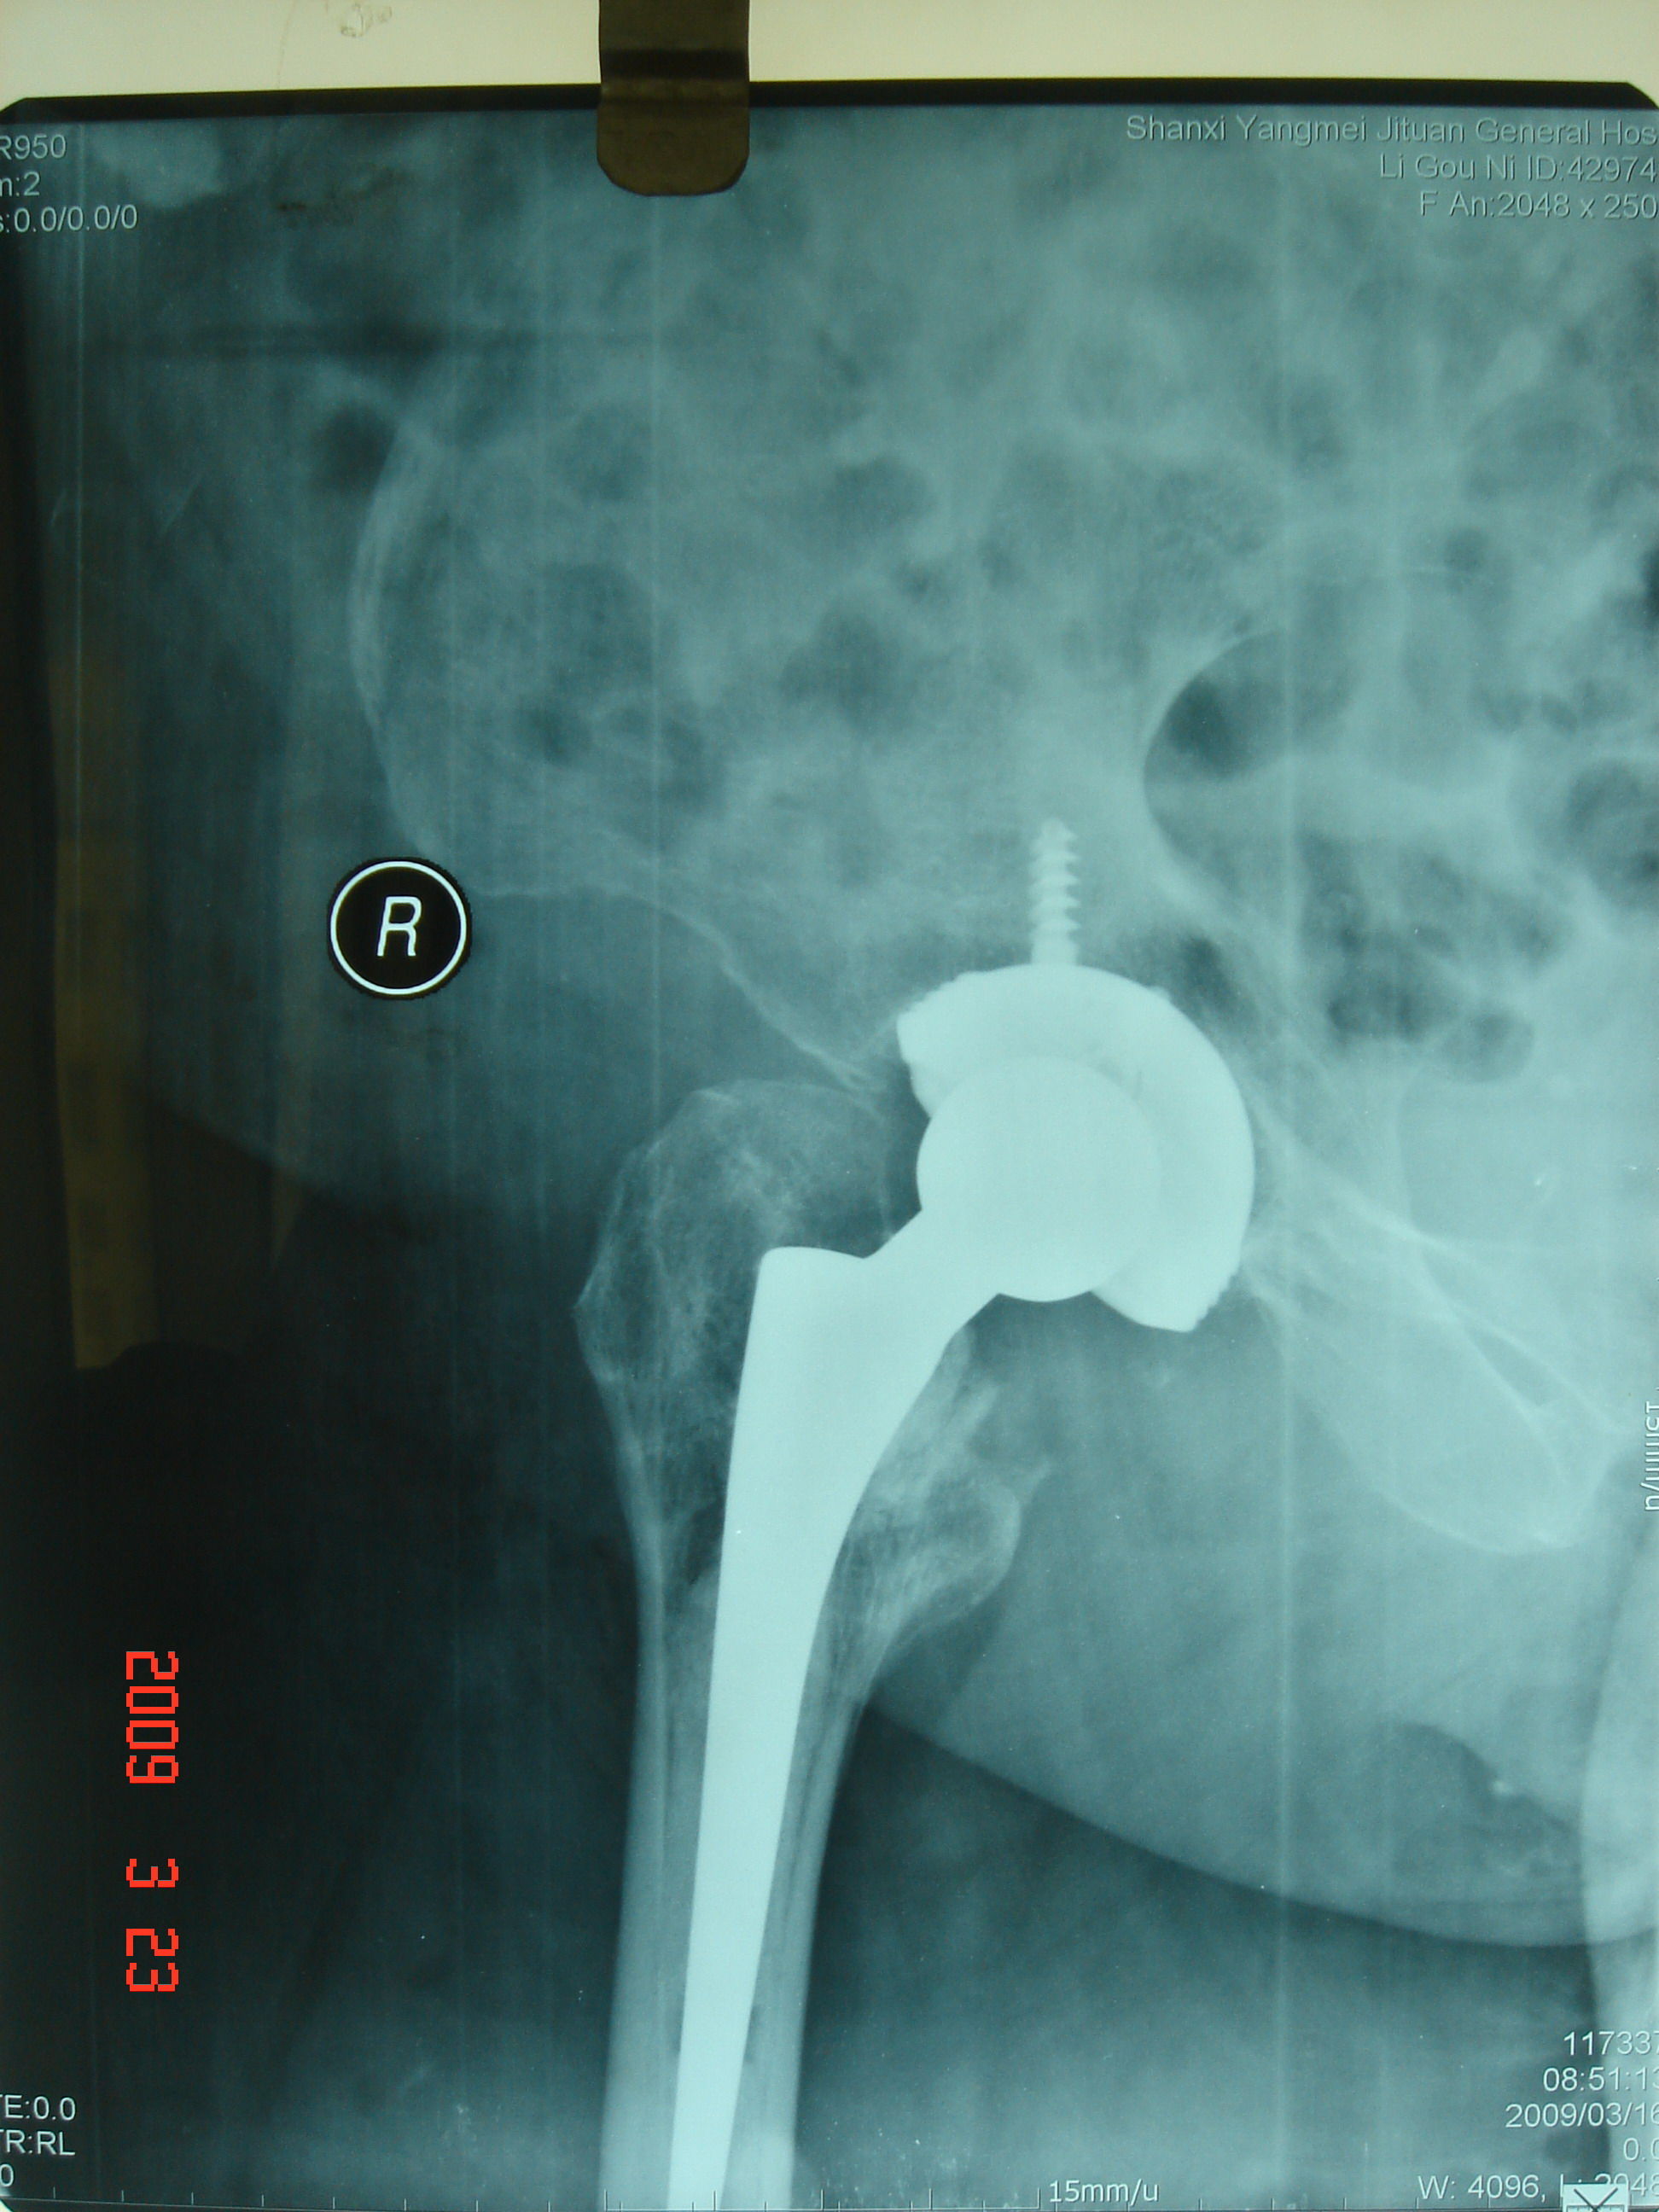 股骨粗隆间骨折的手术治疗